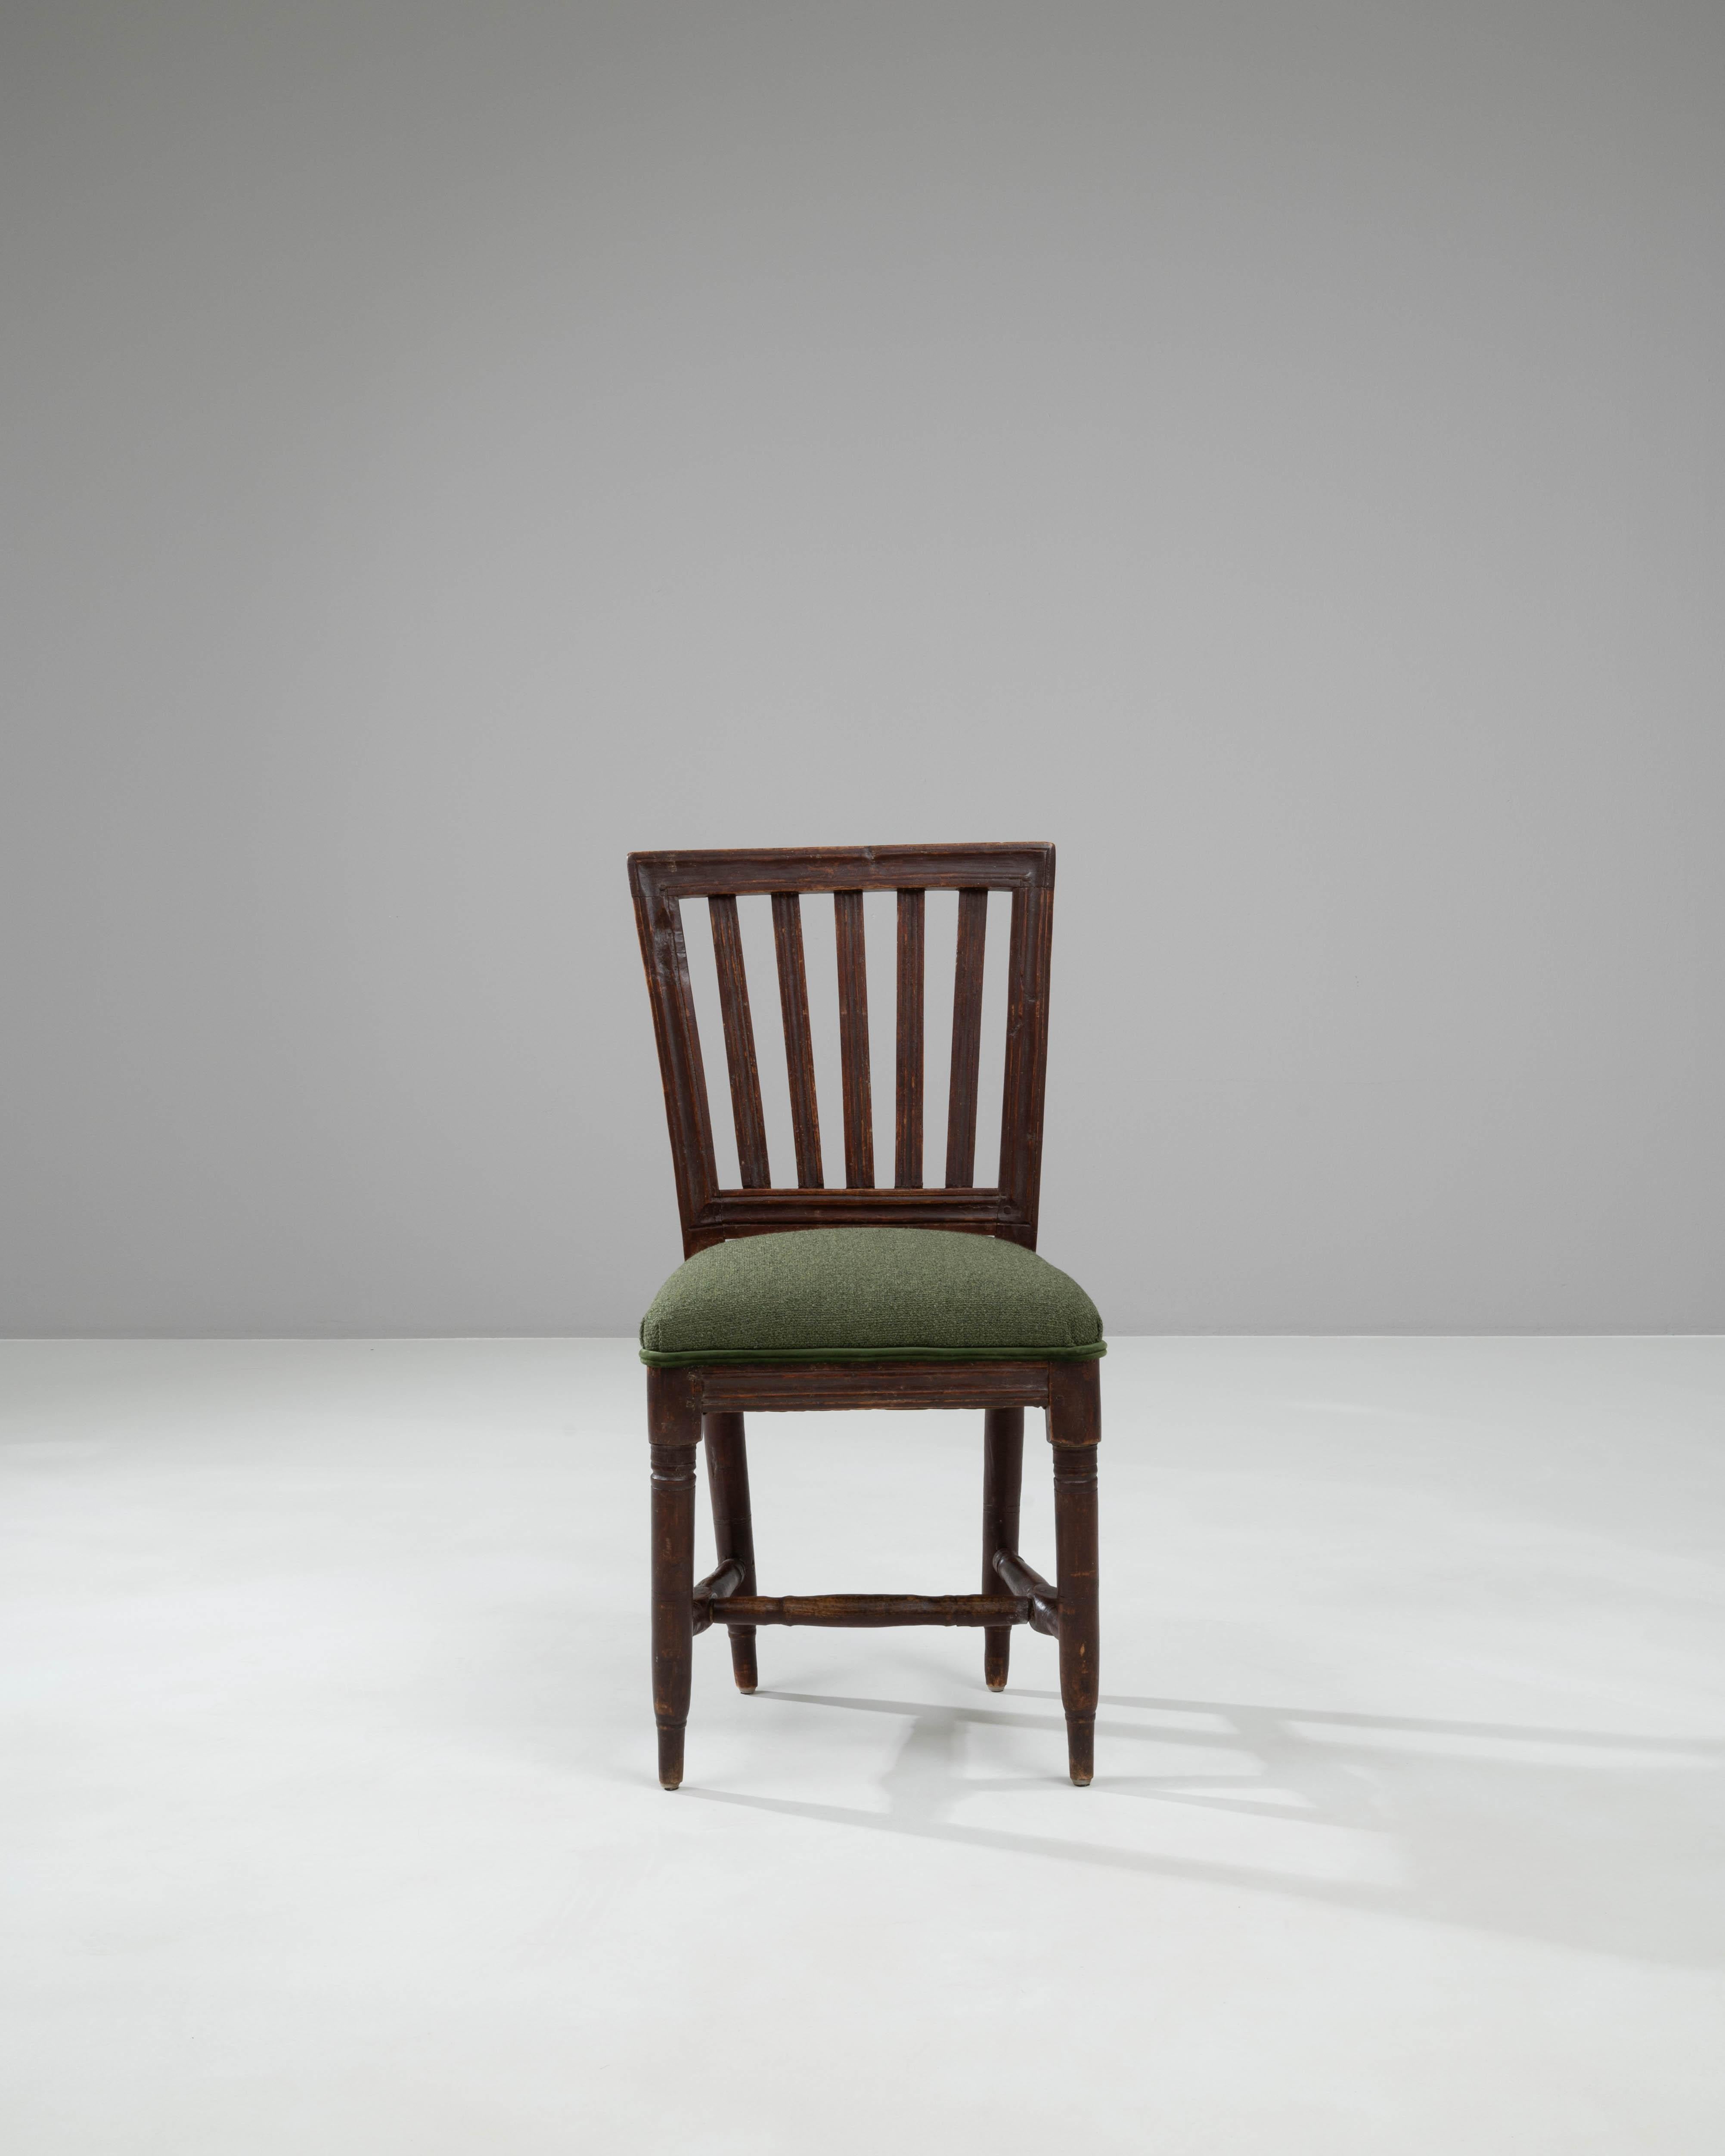 Cette chaise en bois française du XIXe siècle est un magnifique témoignage de l'artisanat classique et d'un style intemporel. Fabriquée en bois robuste avec une finition riche et profonde, la chaise présente des pieds élégamment effilés et un